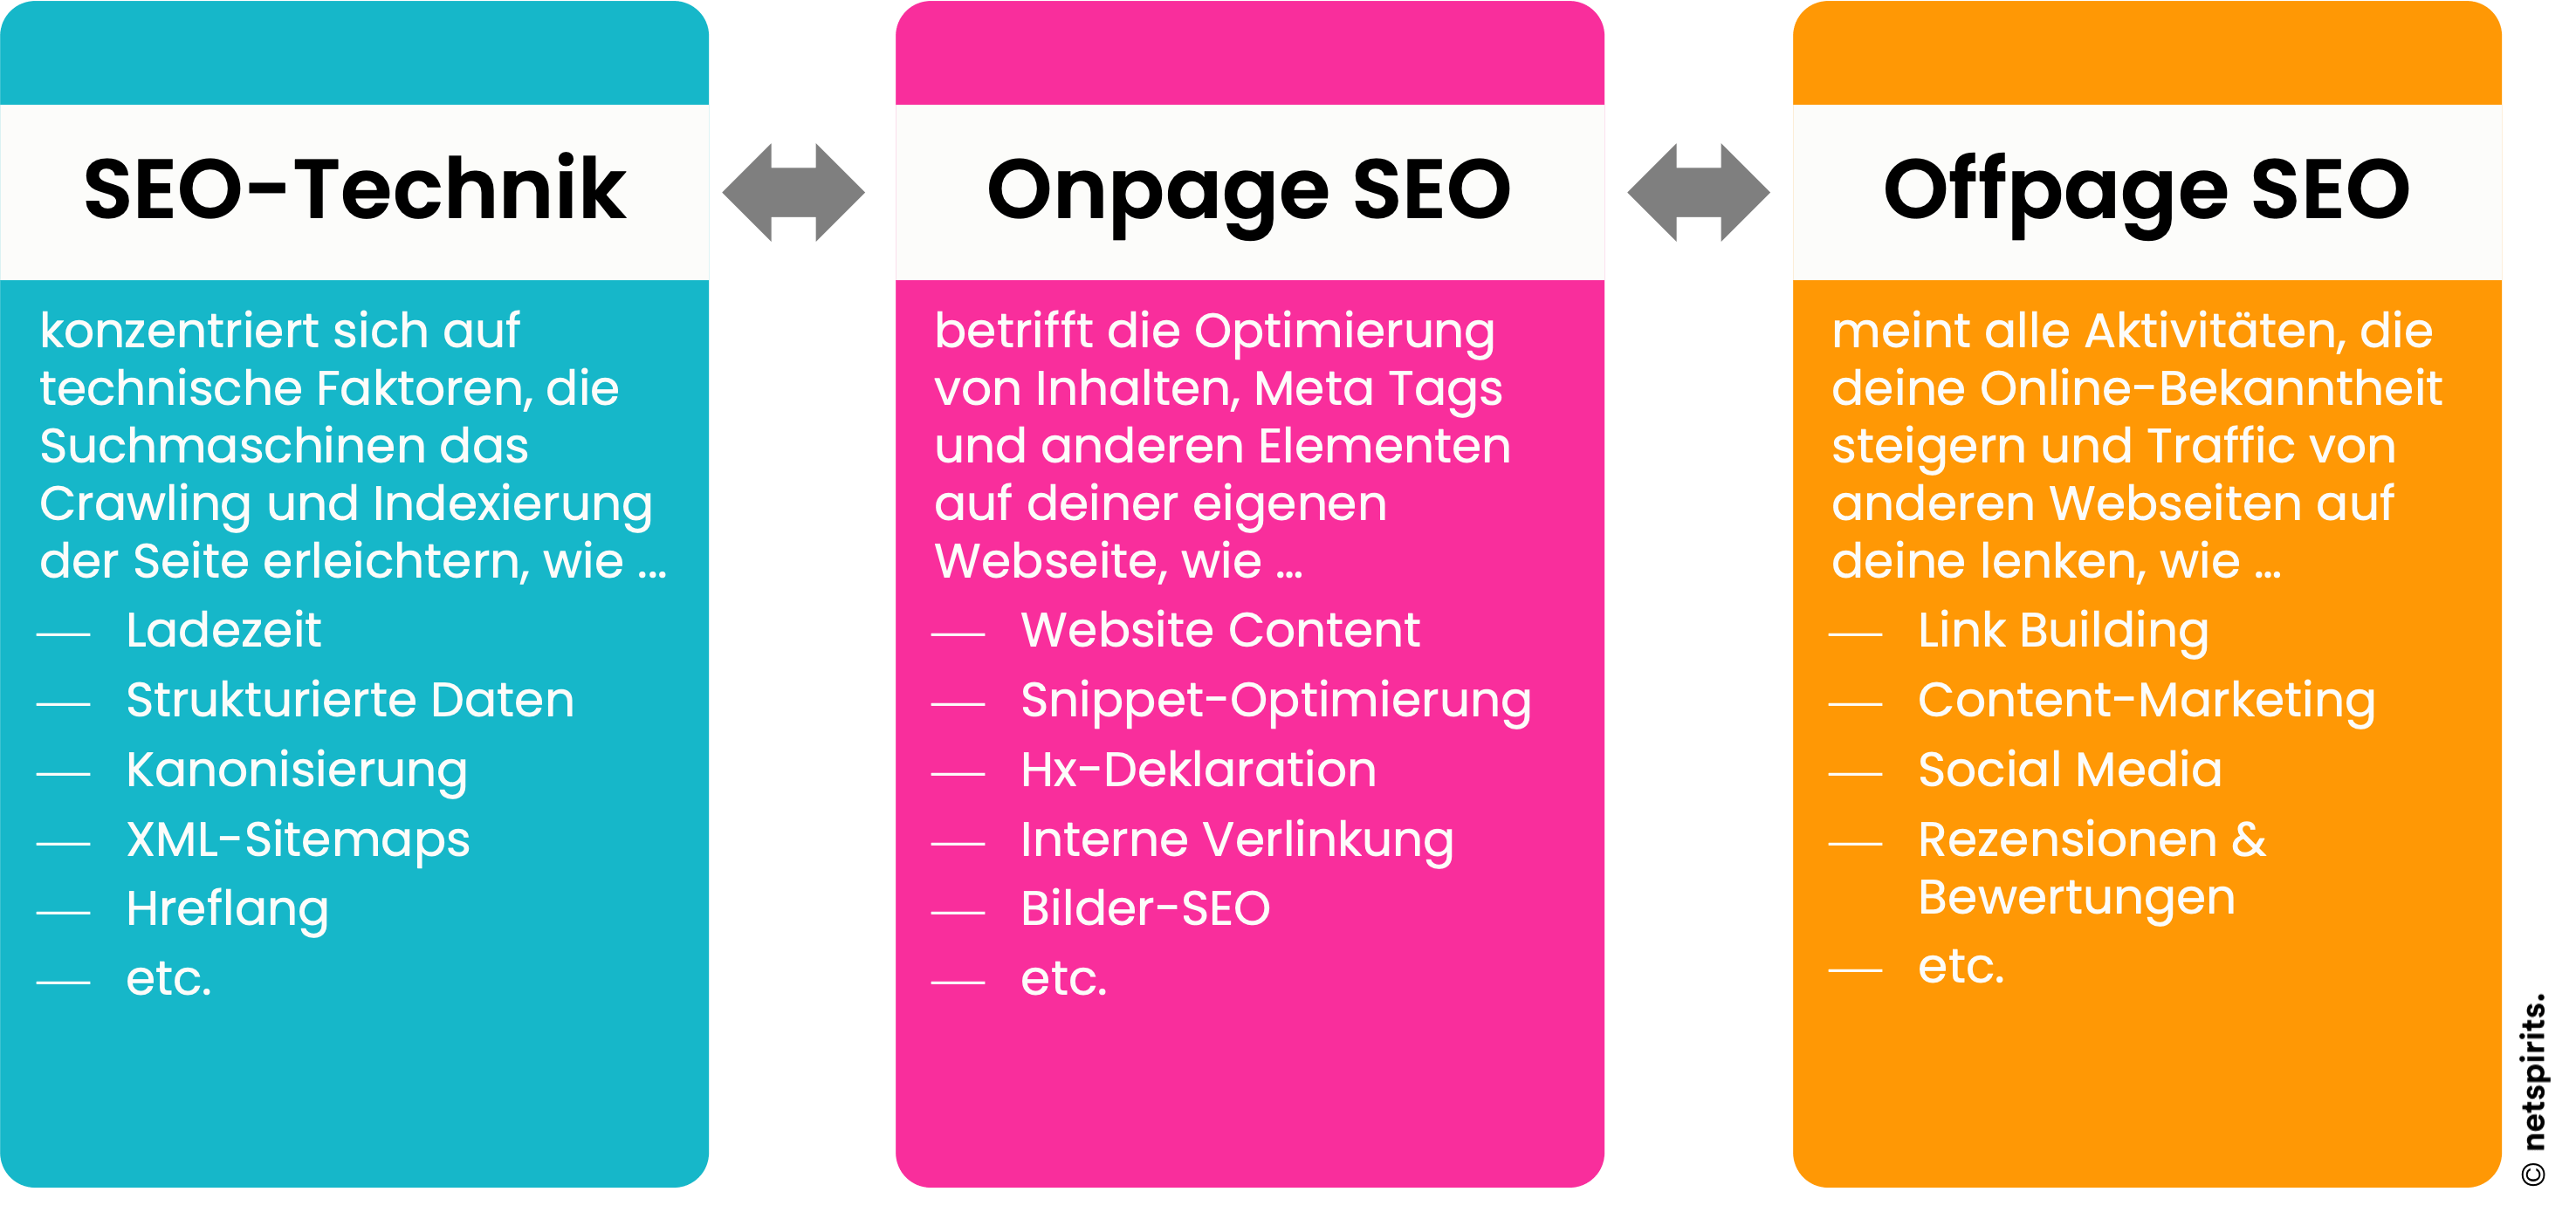 SEO-Technik, Onpage- und Offpage-SEO arbeiten gemeinsam, um das Ranking deiner Website zu verbessern. 